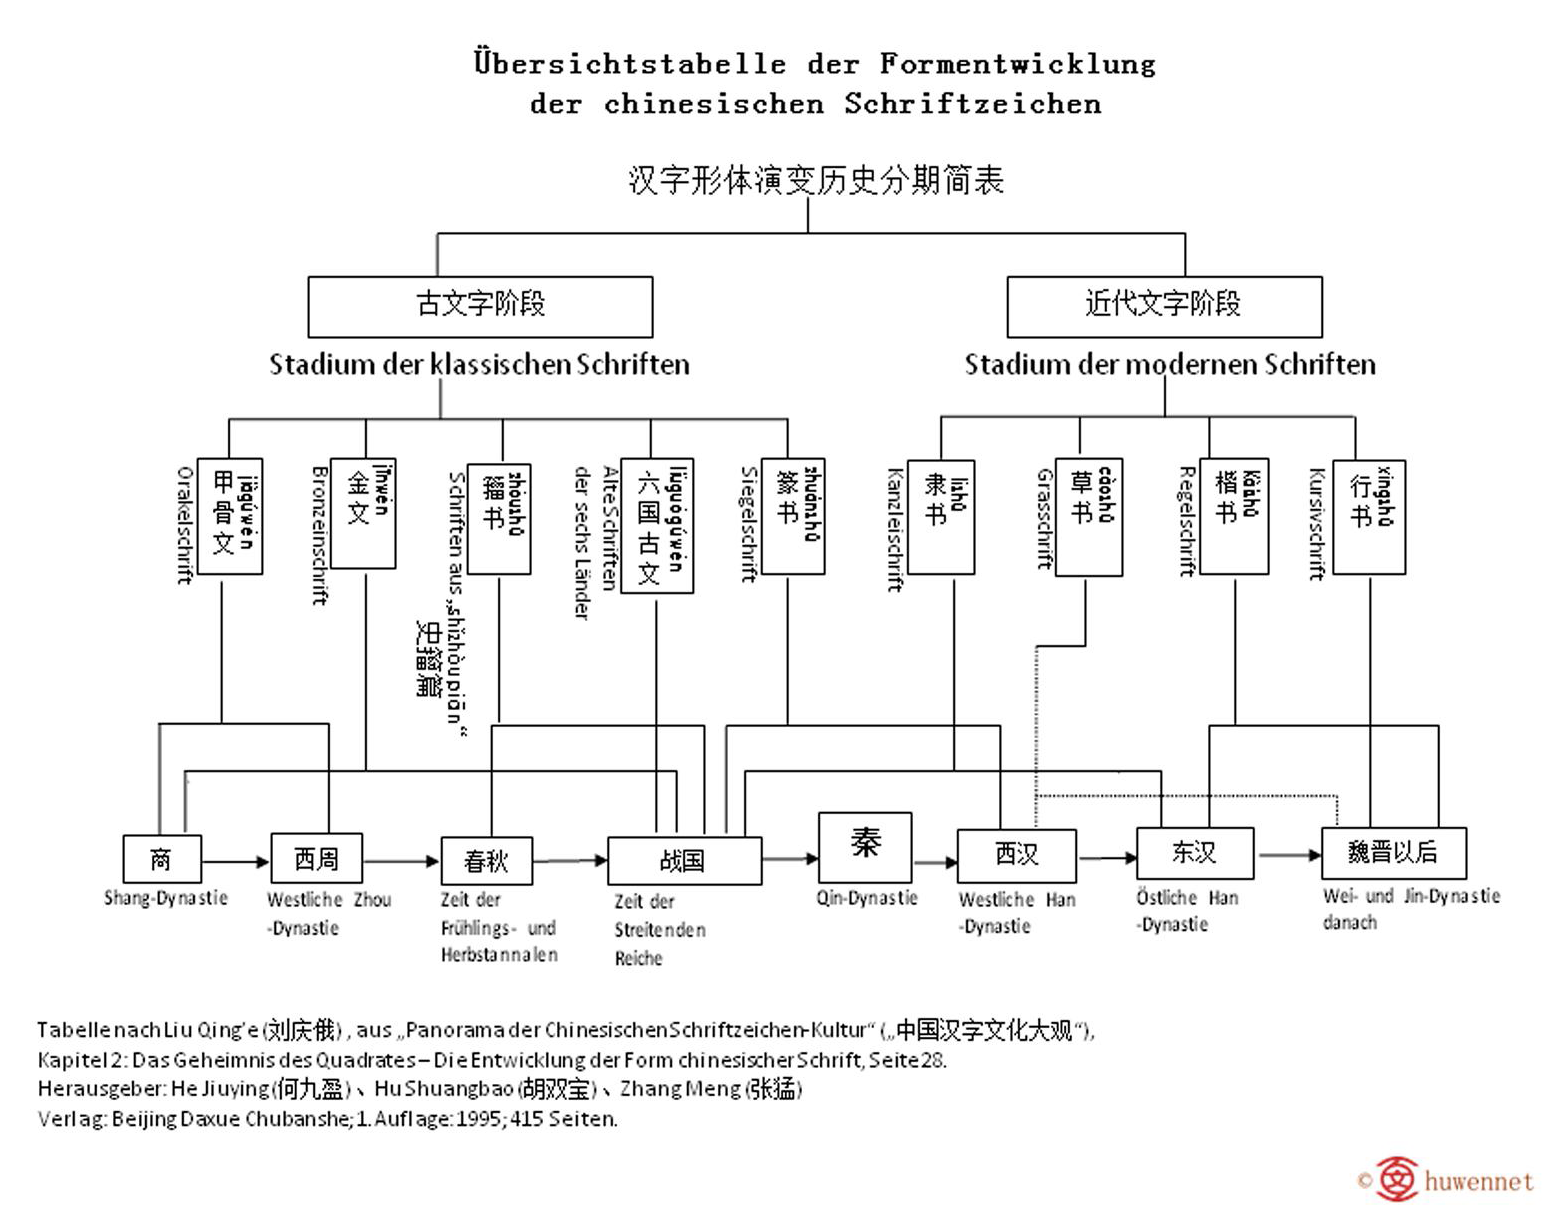 Das Bild zeigt eine Übersicht über die Geschichte der chinesischen Schriftzeichen